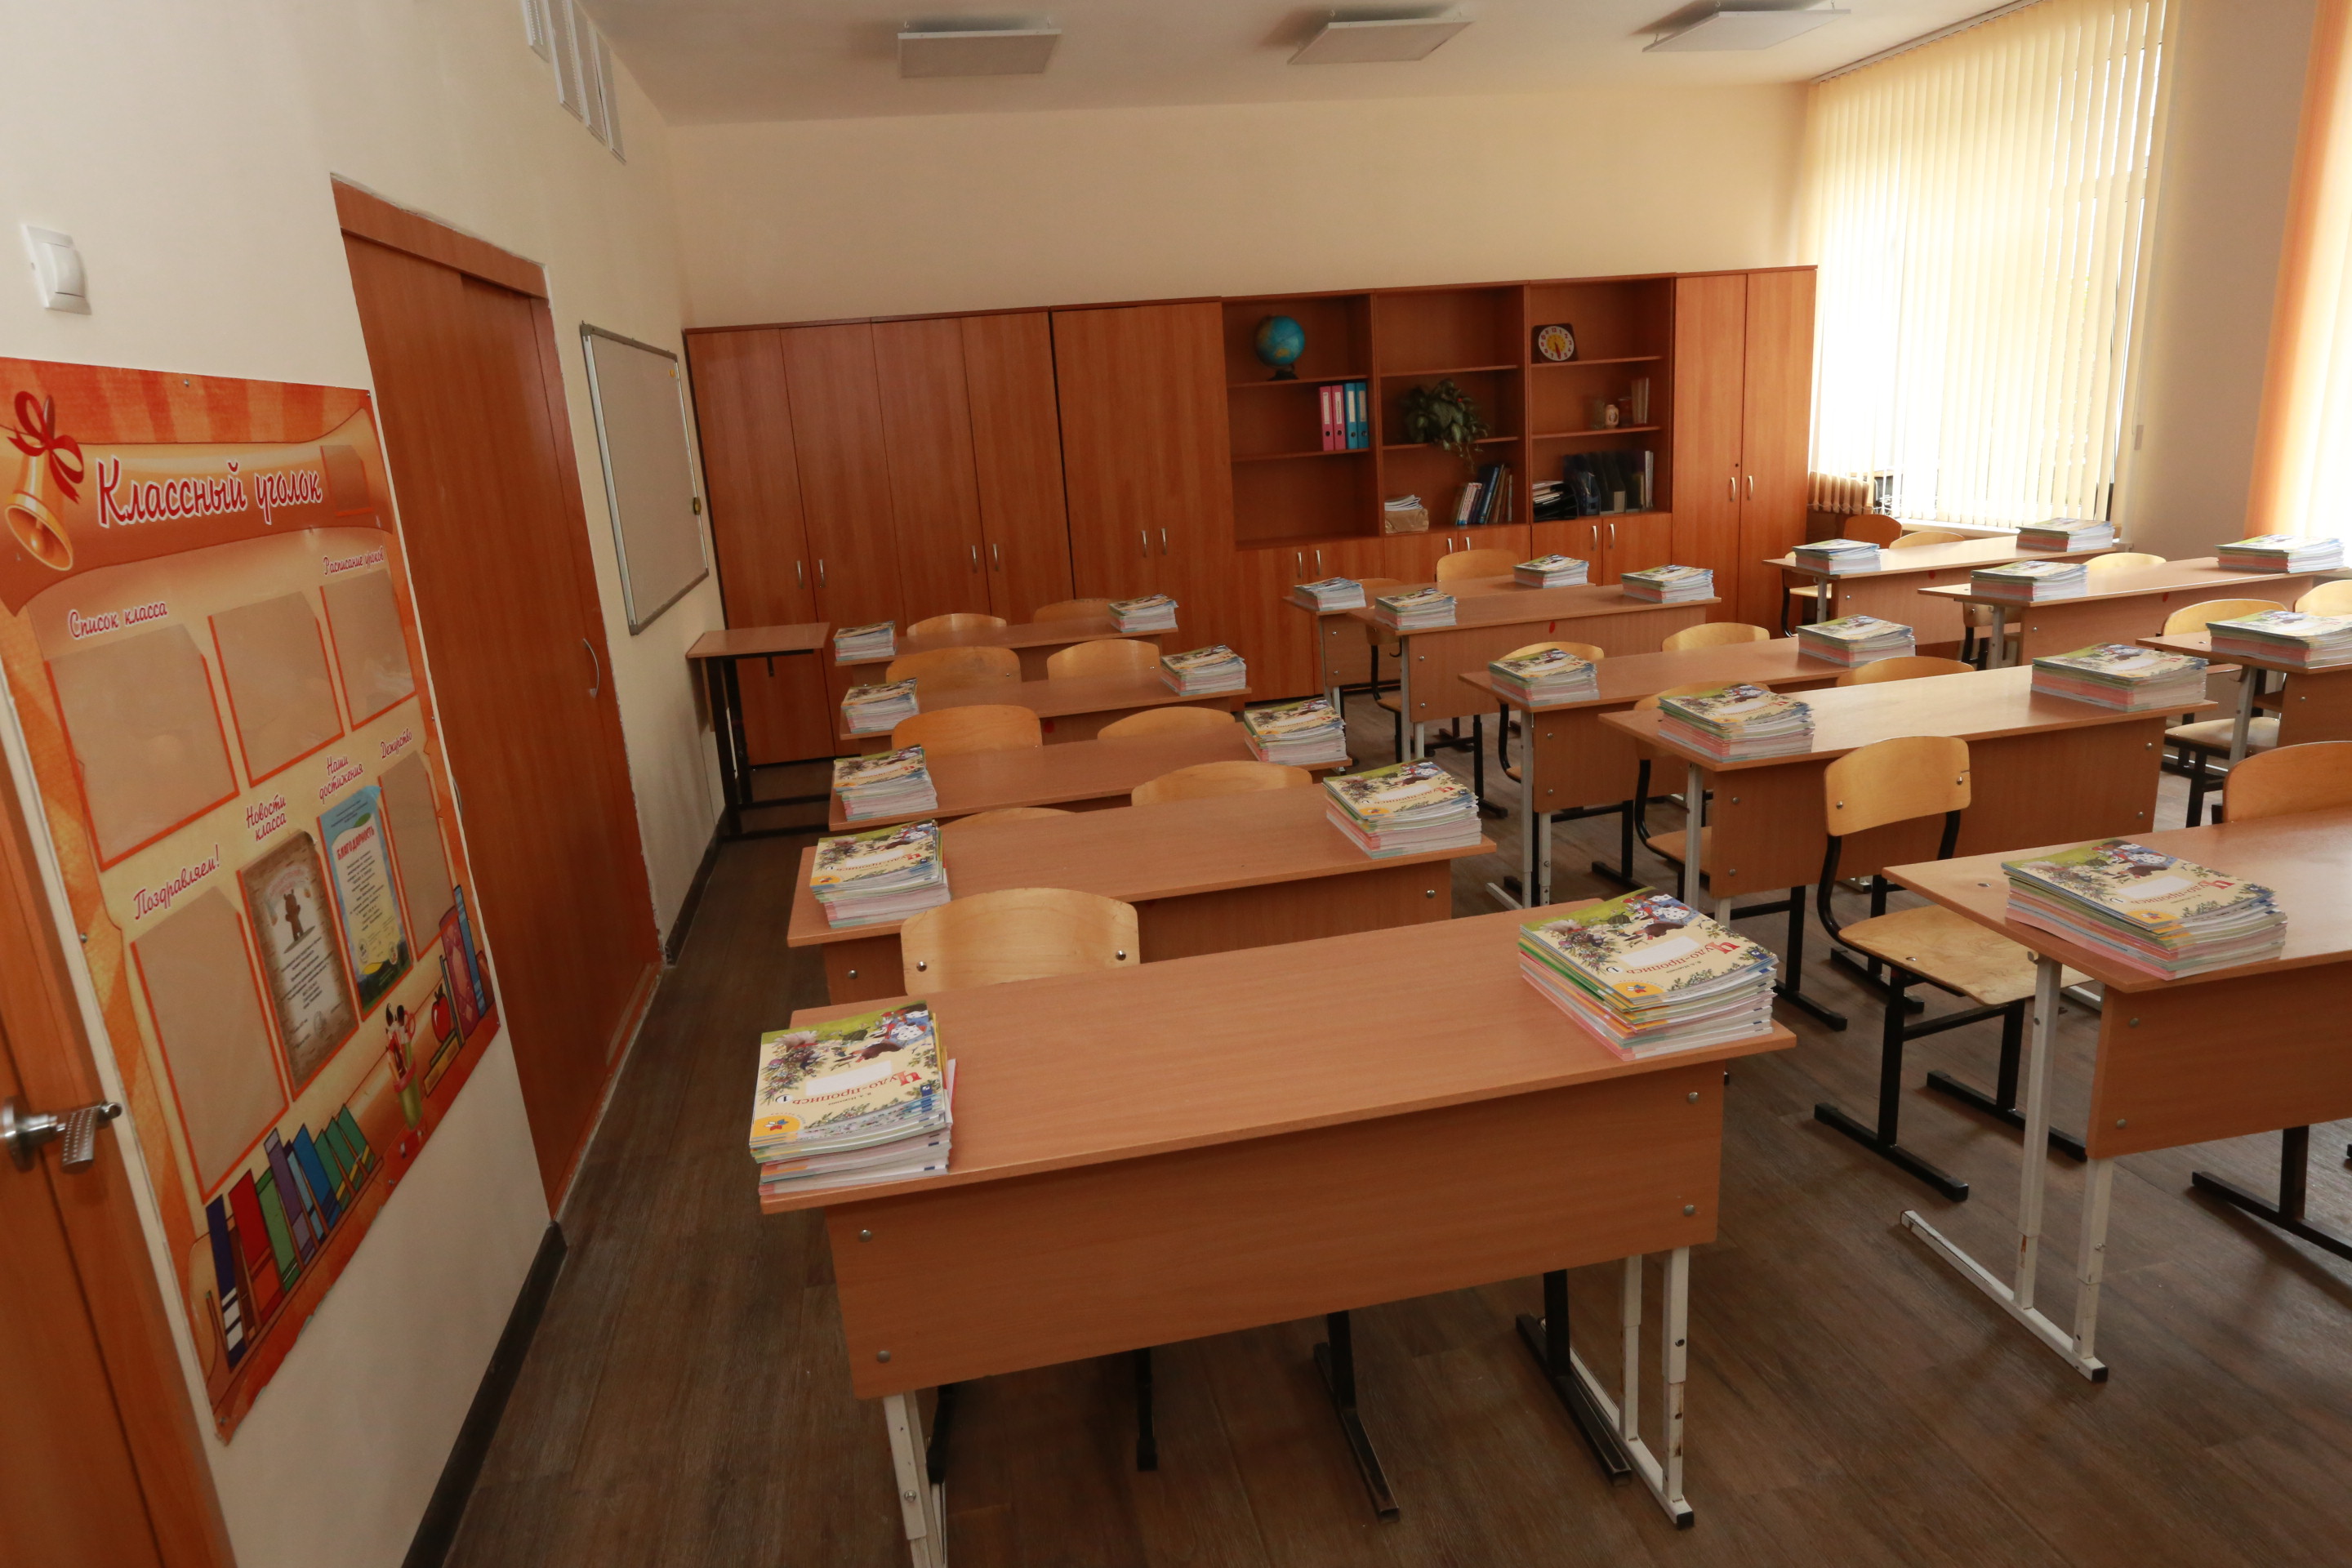 Школа №61 в Советском районе Новосибирска после ремонта готова принимать учеников